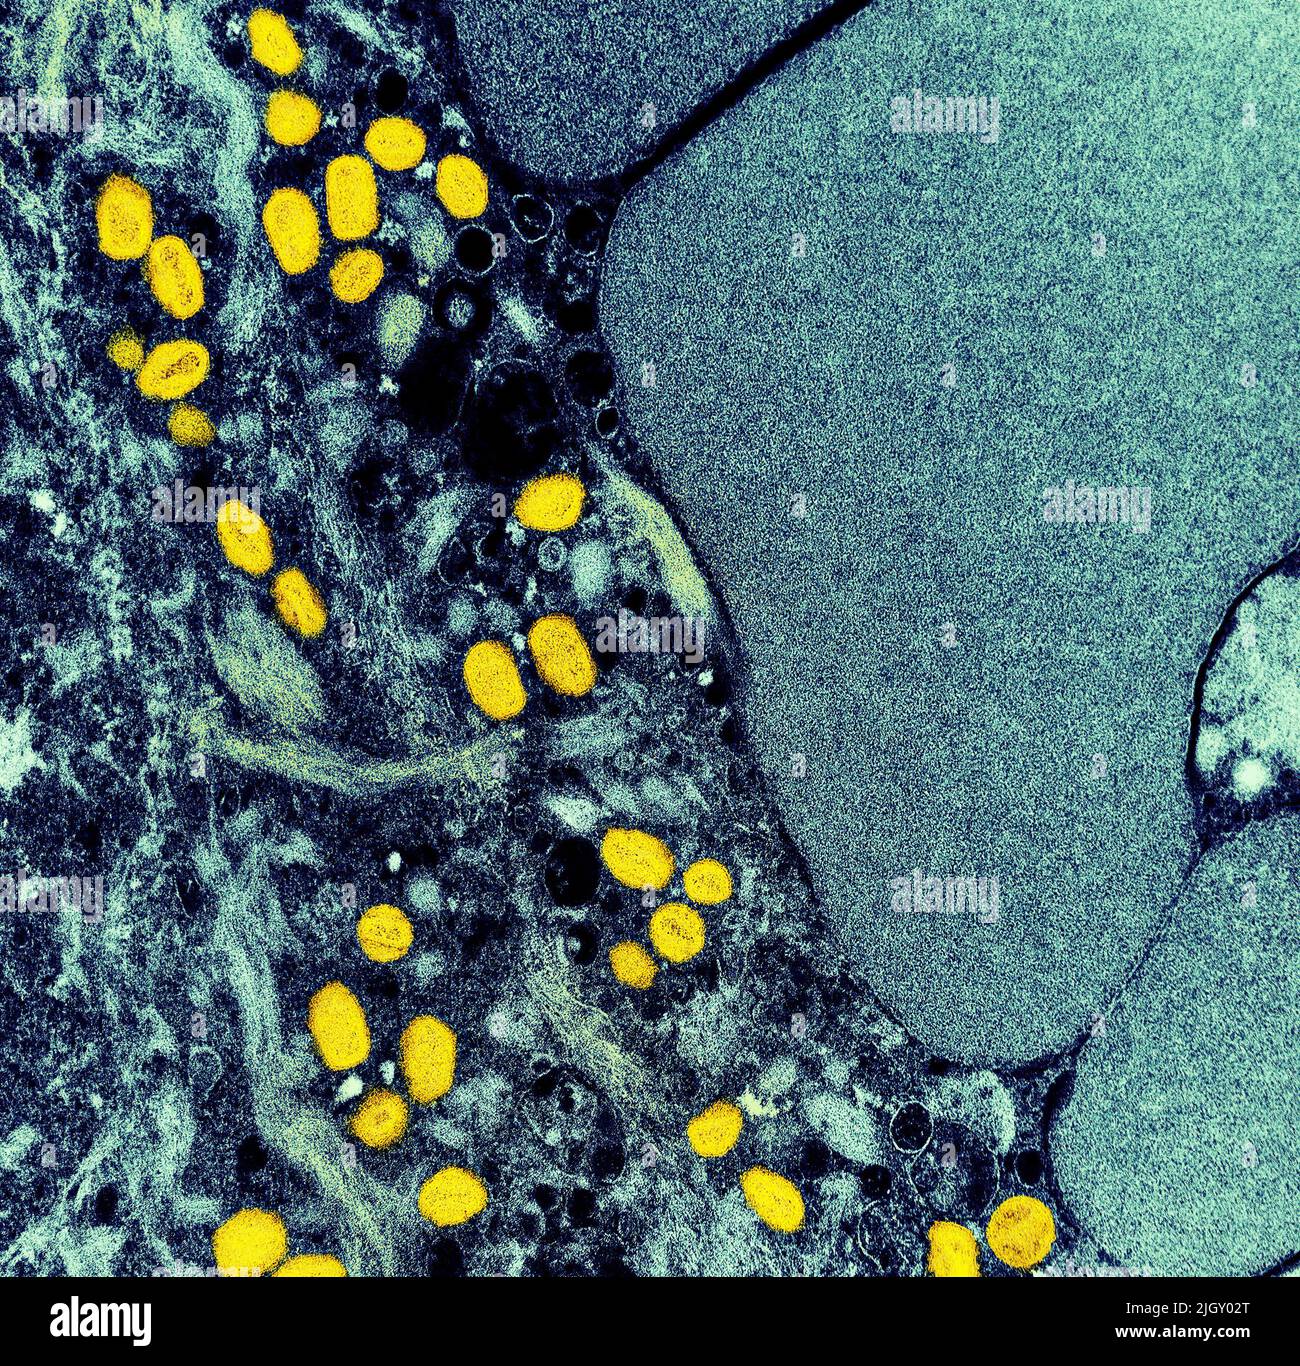 Monkeypox. Micrografia elettronica a trasmissione colorata di particelle di virus Nipah extracellulari (rosse) mature vicino alla periferia di una cellula di vero infettata (blu e verde). Immagine catturata presso lo stabilimento di ricerca integrato NIAID di Fort Detrick, Maryland. Credit NIAID Monkeypox è una malattia virale infettiva che può verificarsi negli esseri umani e in alcuni altri animali.i sintomi includono febbre, linfonodi gonfi, e un rash che forma vescicole e poi croste sopra. Il tempo che va dall'esposizione all'insorgenza dei sintomi varia da 5 a 21 giorni. La durata dei sintomi è tipicamente da 2 a 4 settimane. Foto Stock